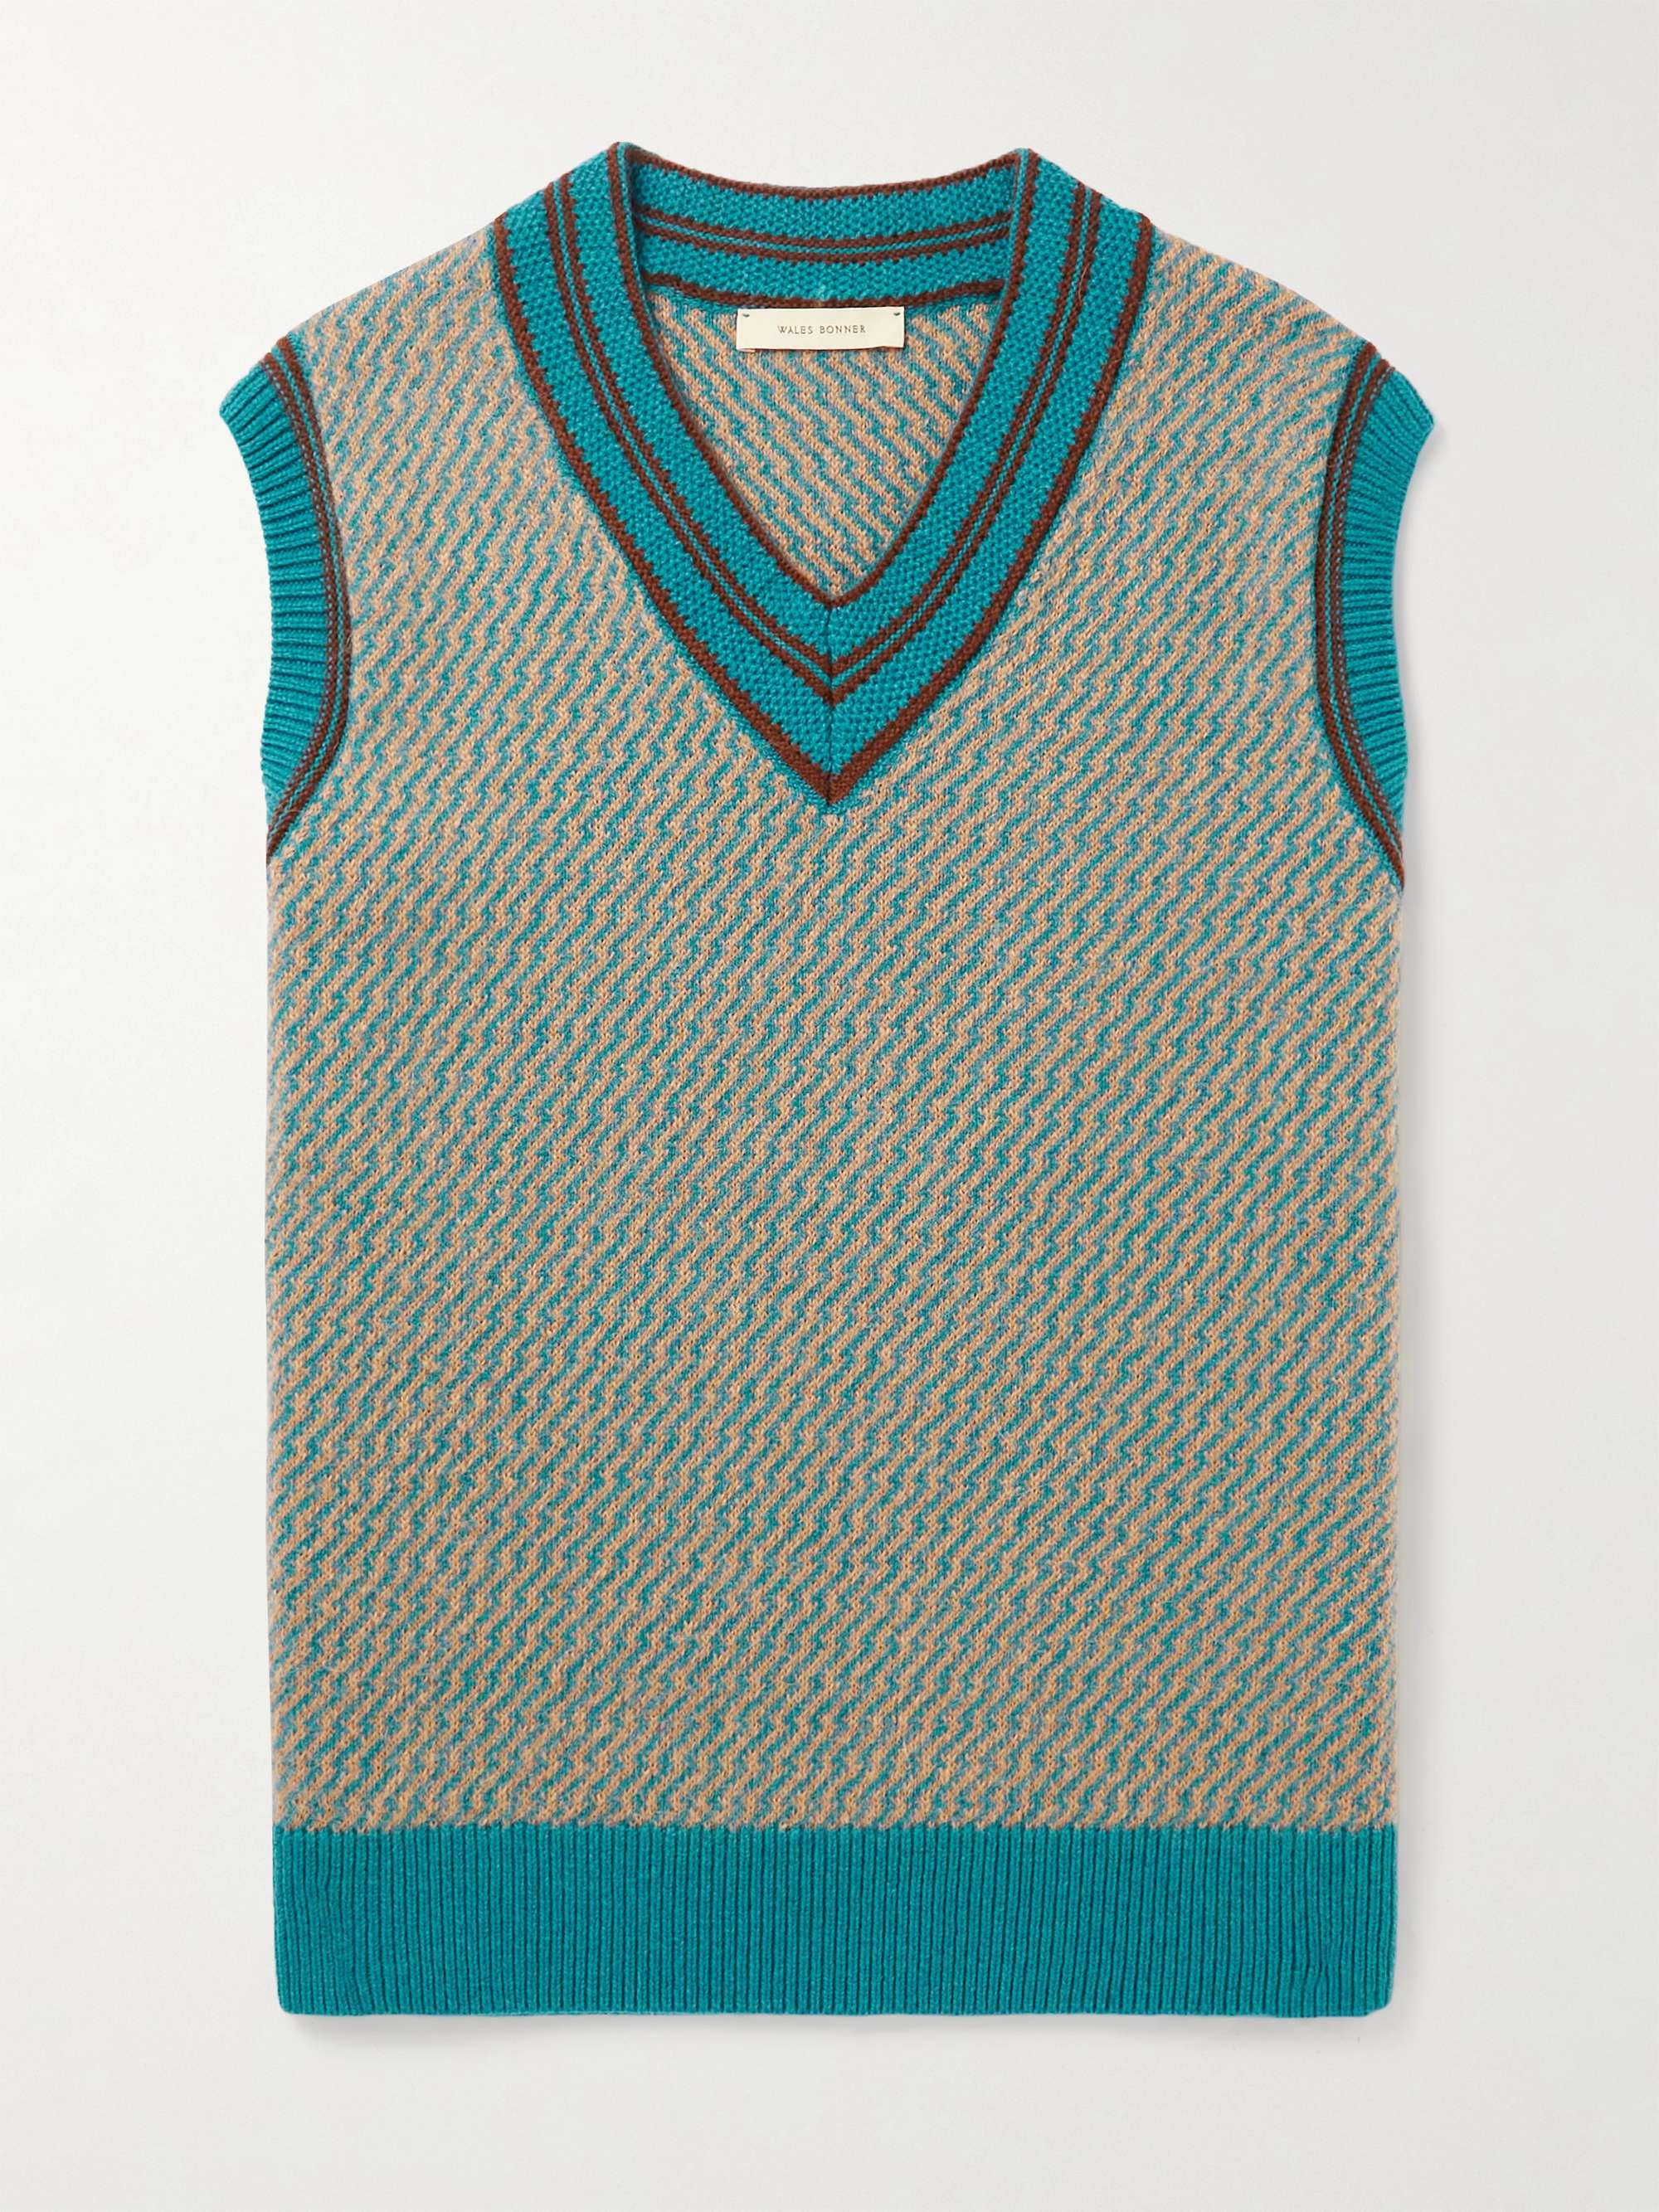 WALES BONNER Chorus Cashmere-Blend Jacquard Sweater Vest